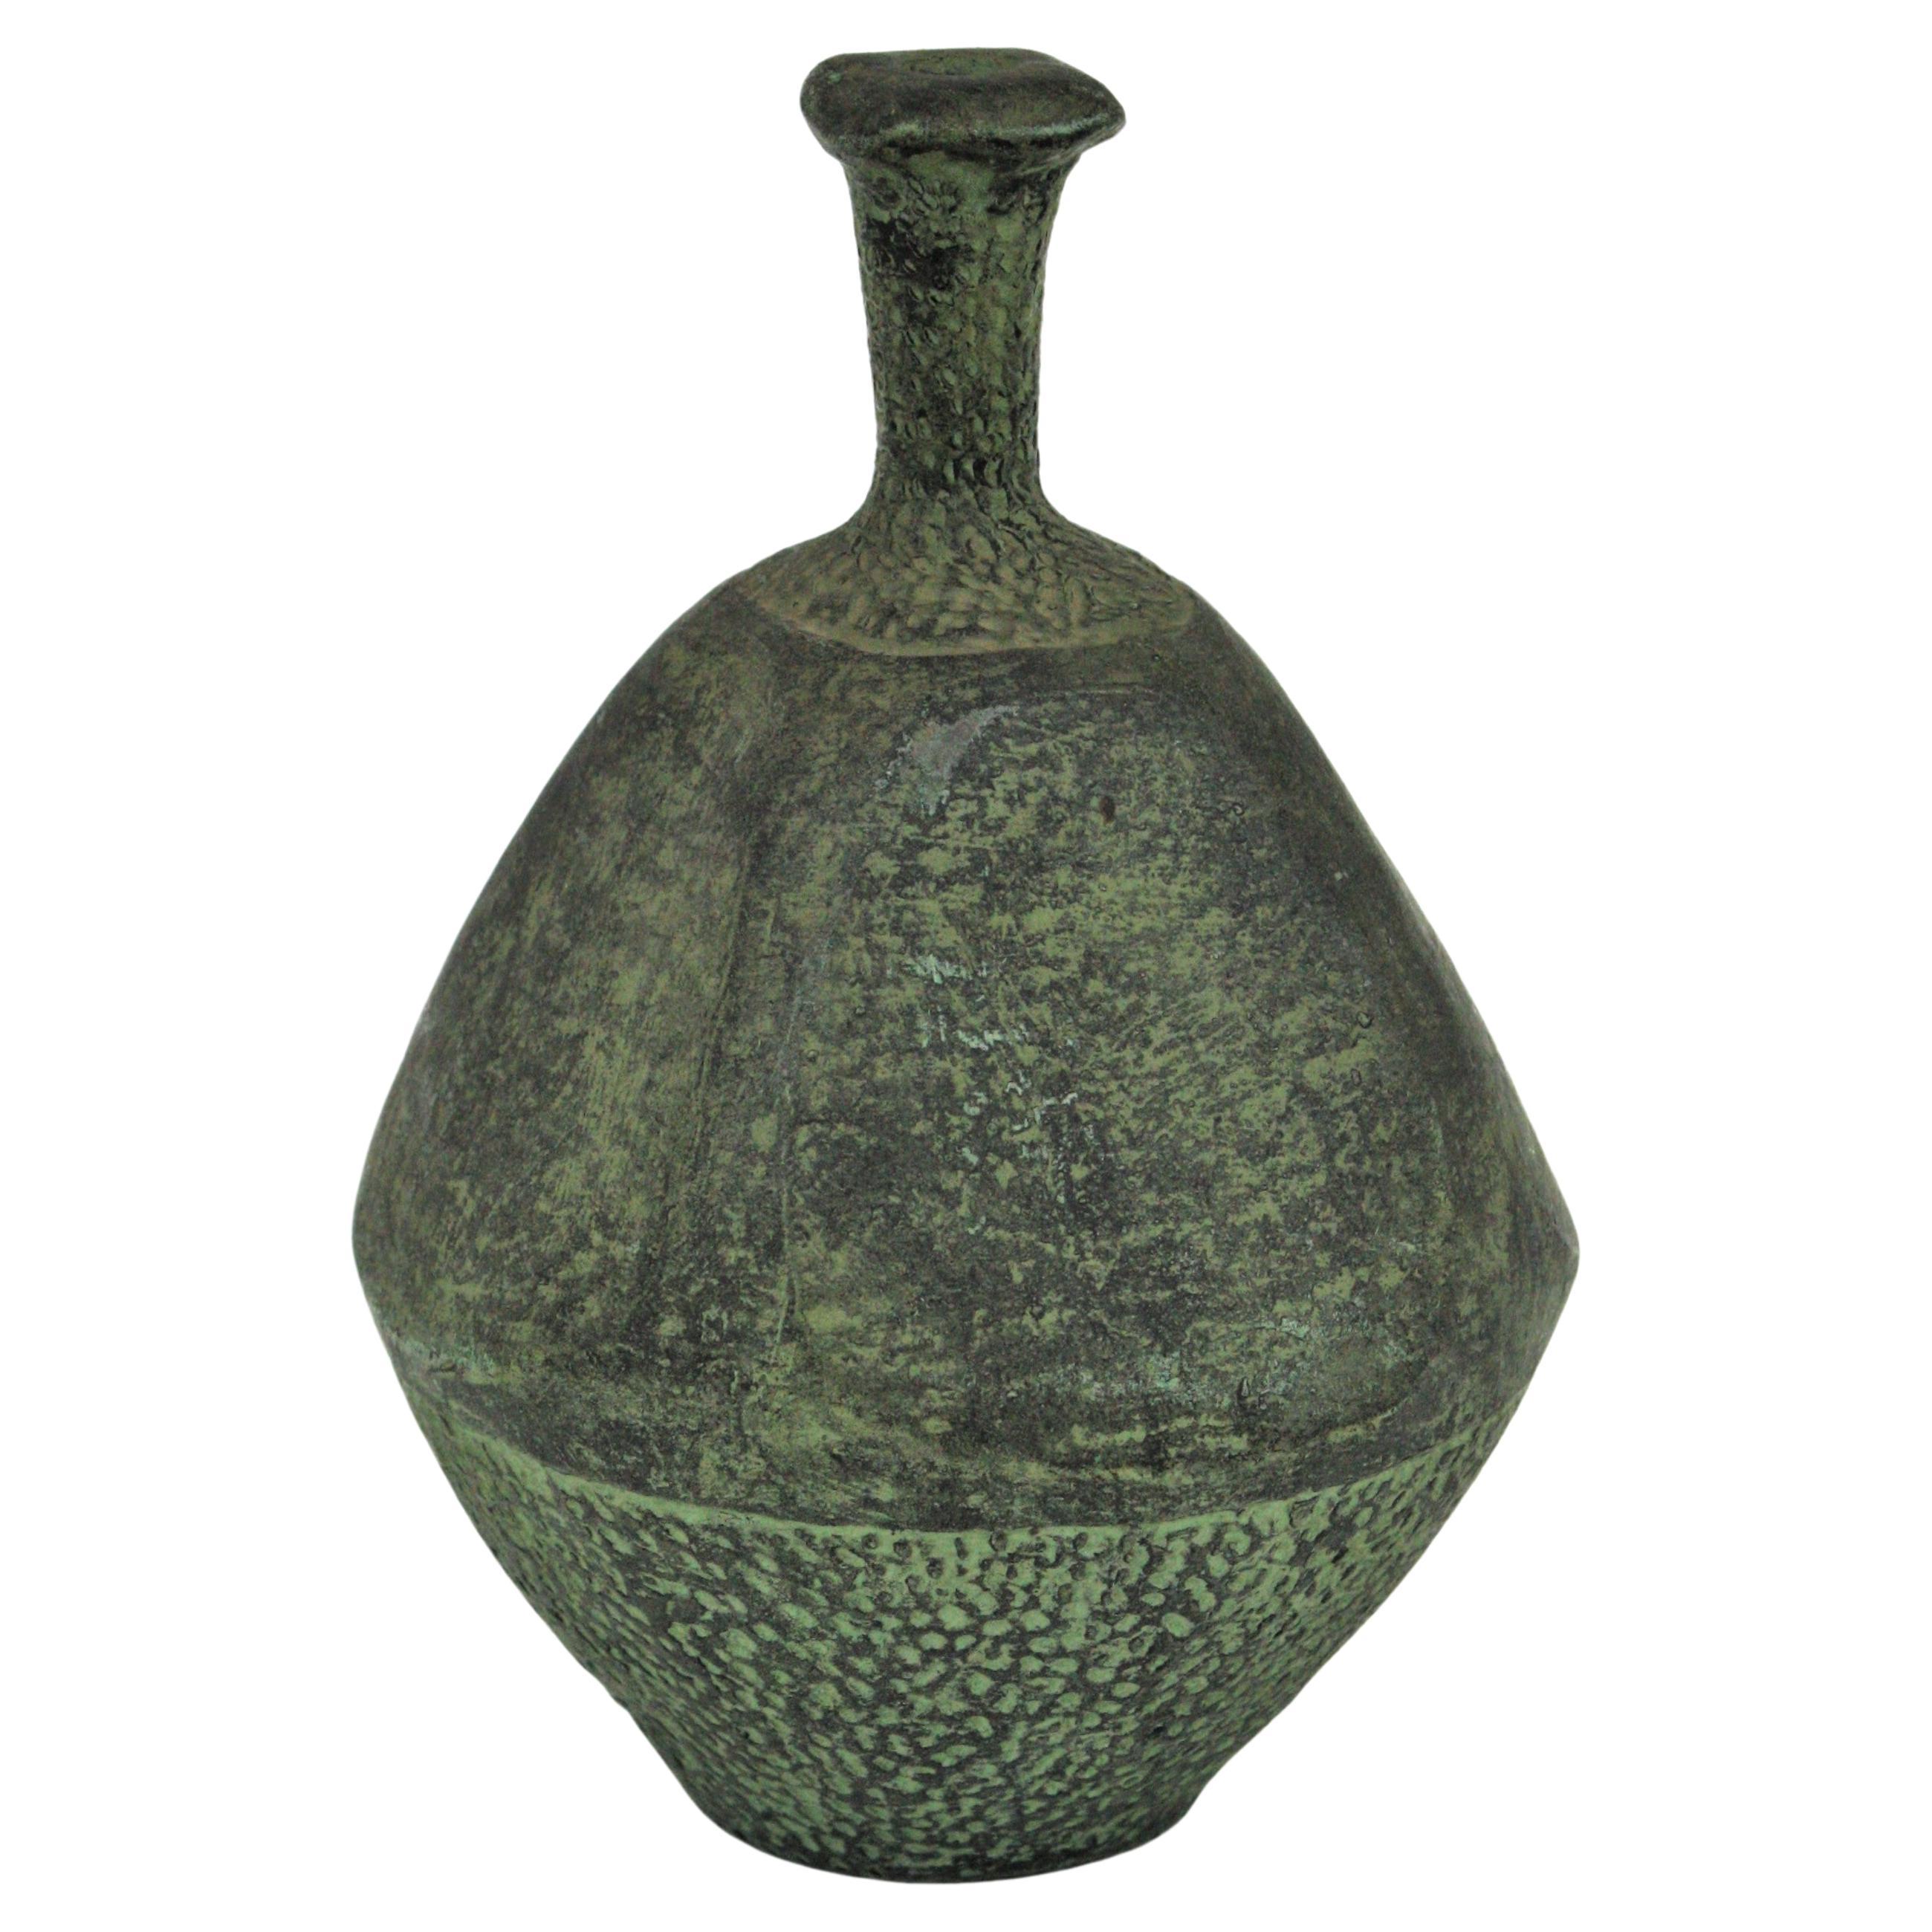 Spanish Green Terracotta Bottle Vase or Vessel